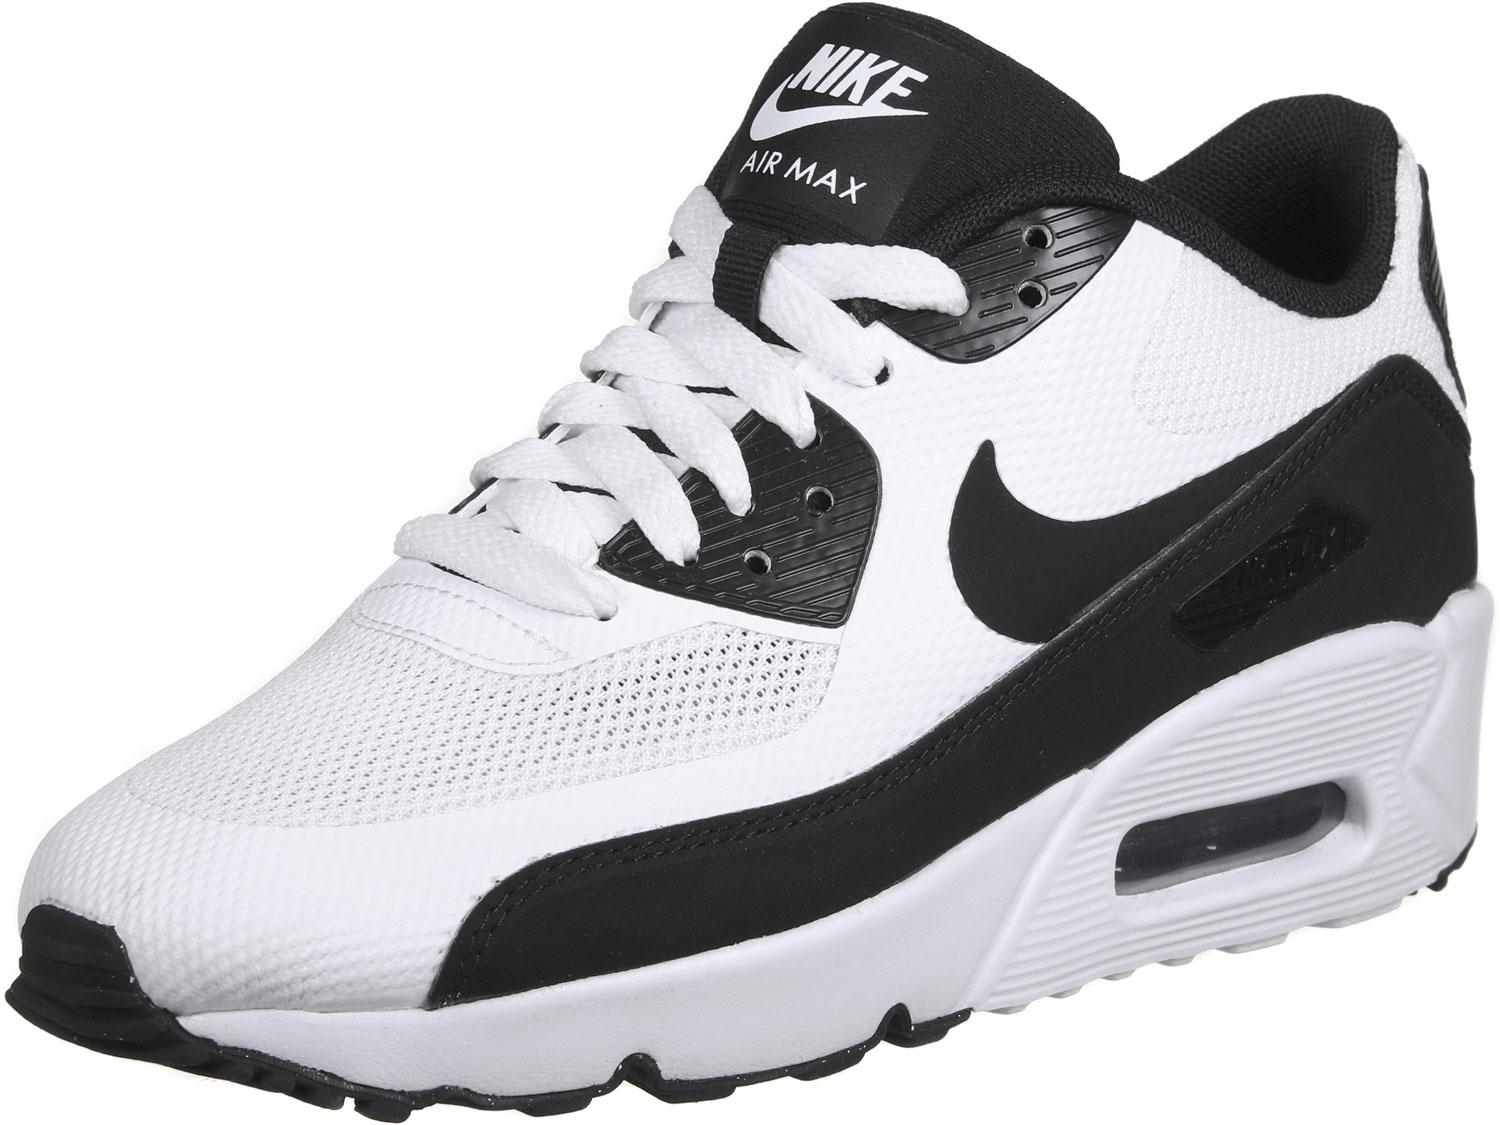 nike air max 90 youth gs chaussures noir blanc, Nike Air Max 90 Ultra 2.0 GS chaussures enfants blanc noir